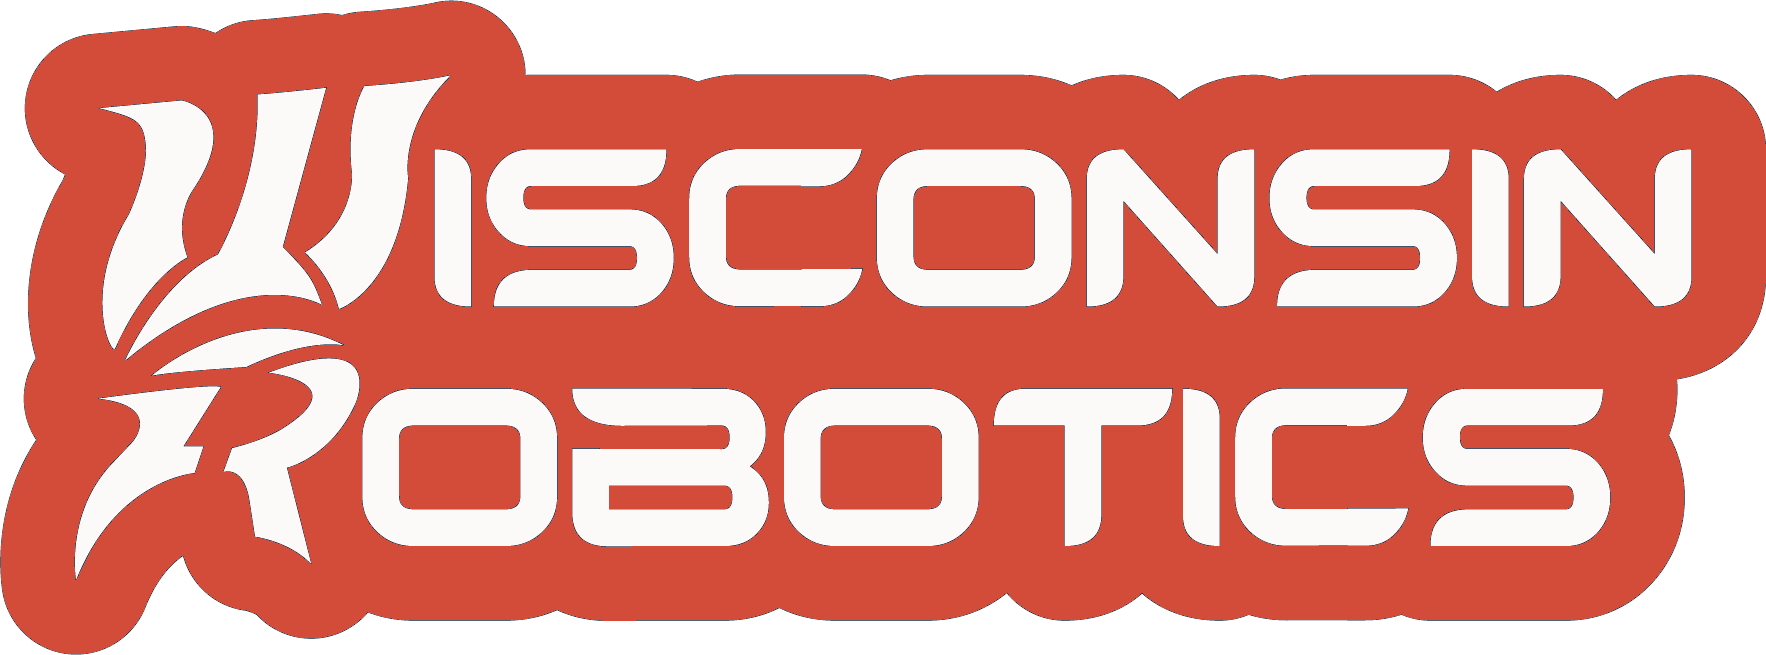 Wisconsin Robotics Full Logo